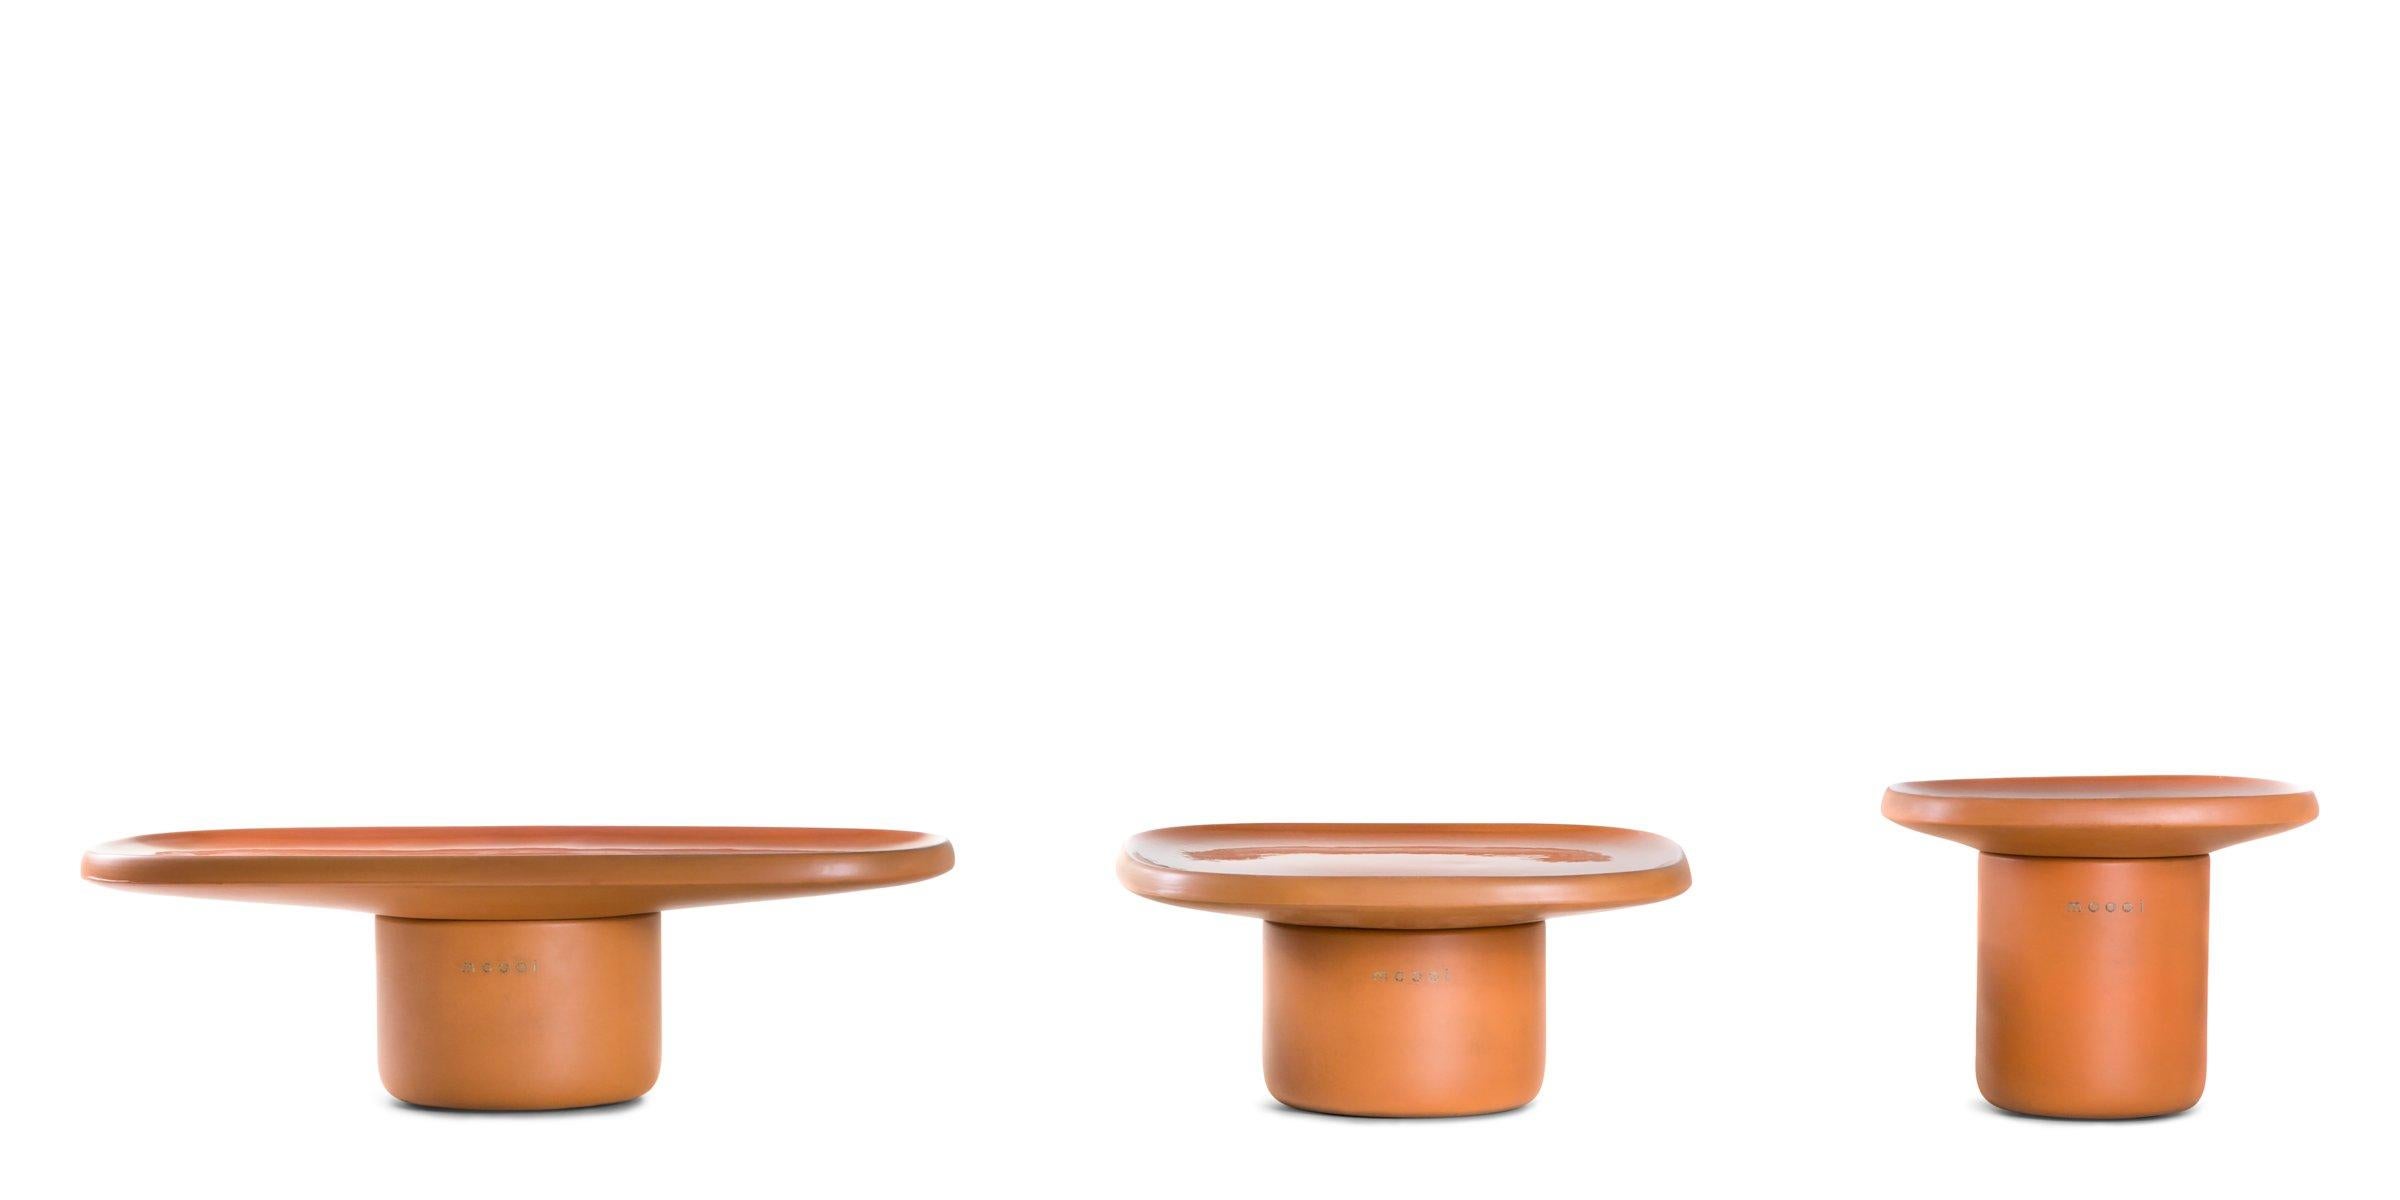 Obon est une collection de trois tables inspirées d'un matériau ancien, terreux et irrégulier : la terre cuite. La terre cuite, dont les origines se perdent dans la nuit des temps, est à la base de découvertes archéologiques millénaires dans le